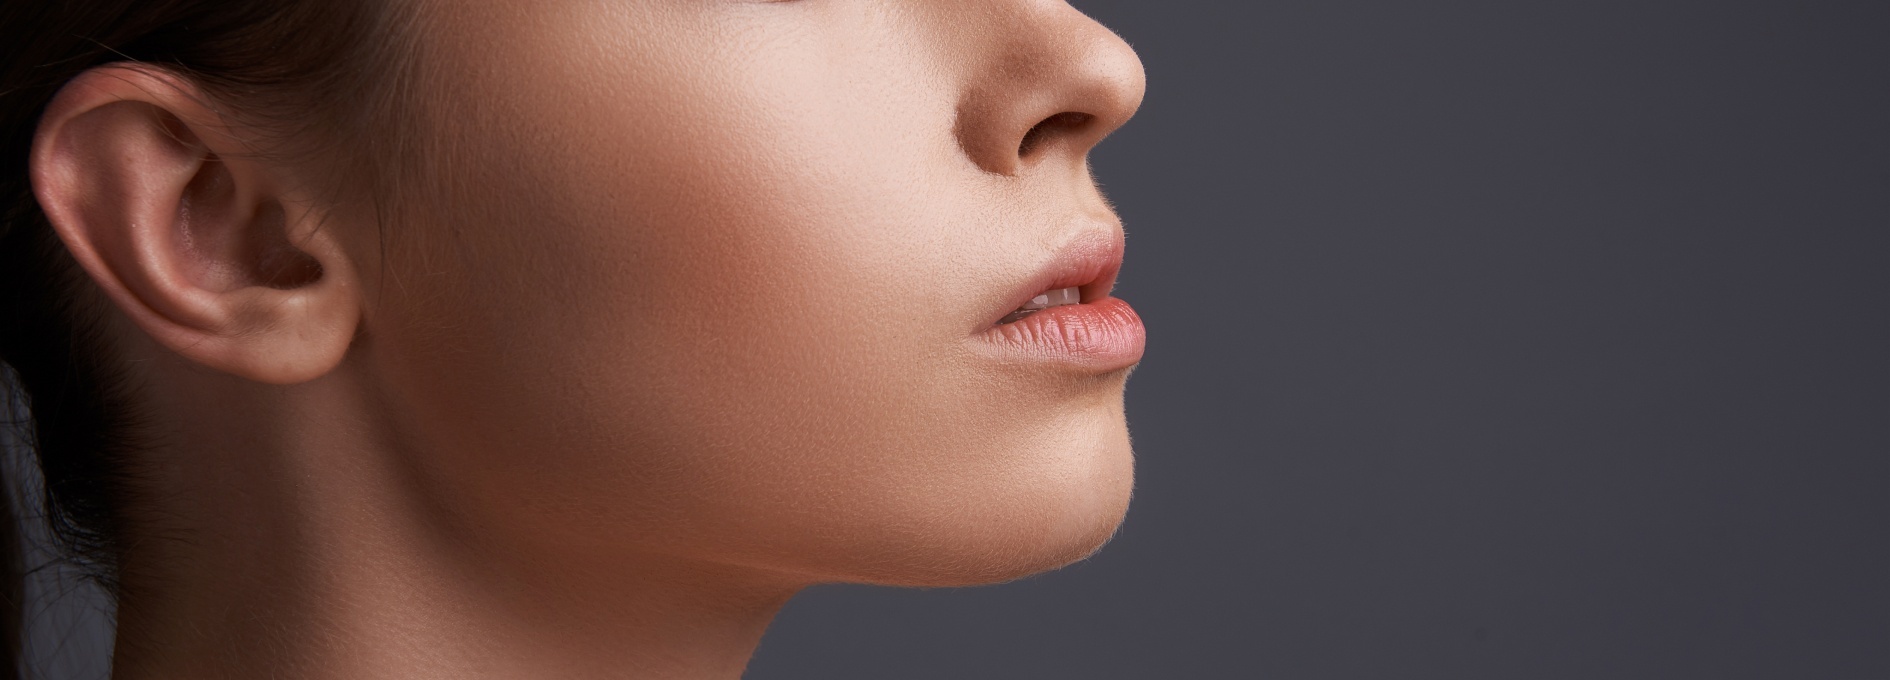 Comment aligner les mâchoires | rééducation maxillo facial | Institut du visage | Bordeaux